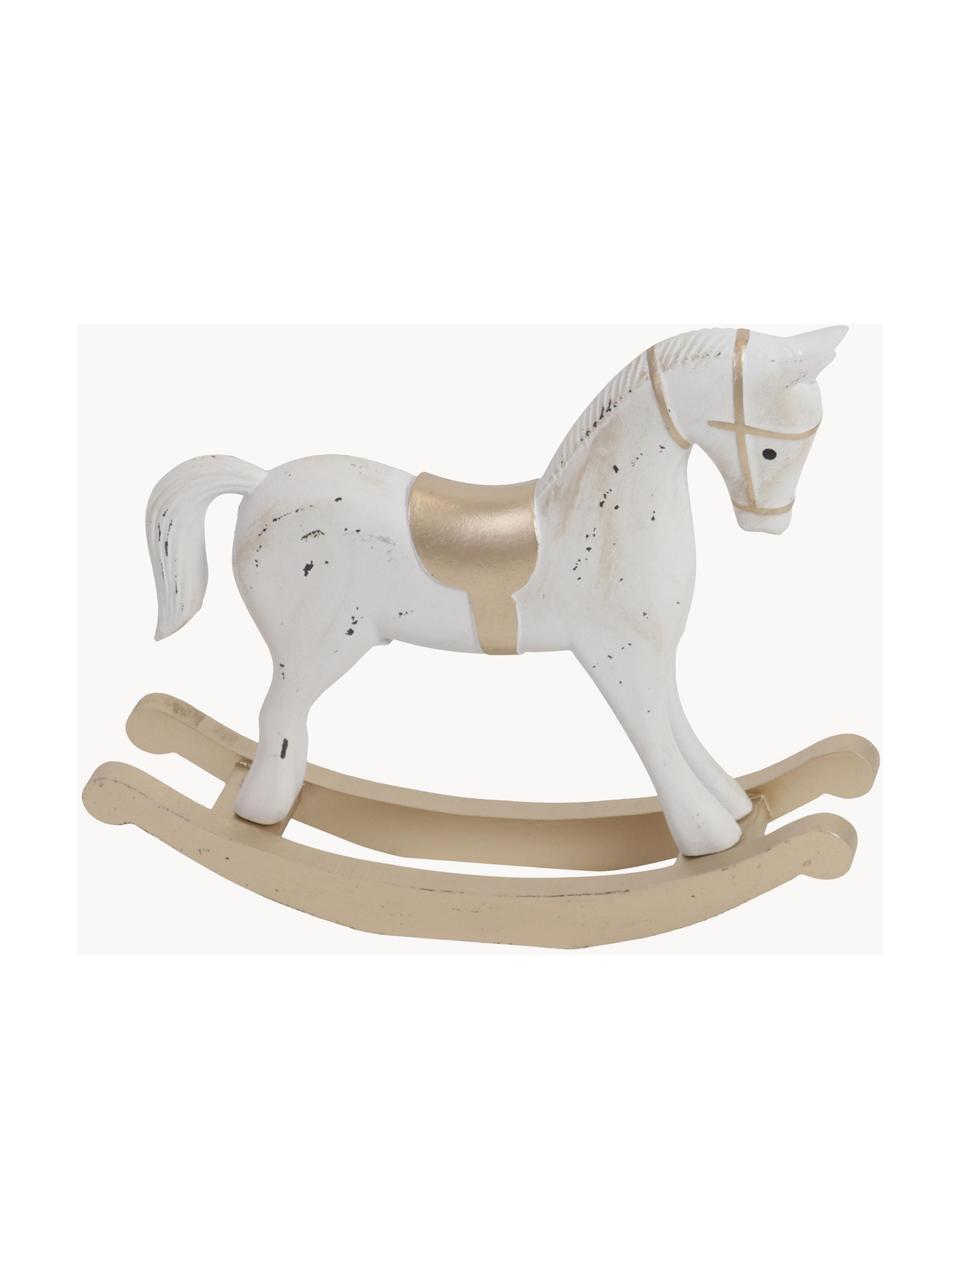 Dekorace Horse, Dřevovláknitá deska střední hustoty, potažená, Bílá, béžová, zlatá, Š 38 cm, V 32 cm